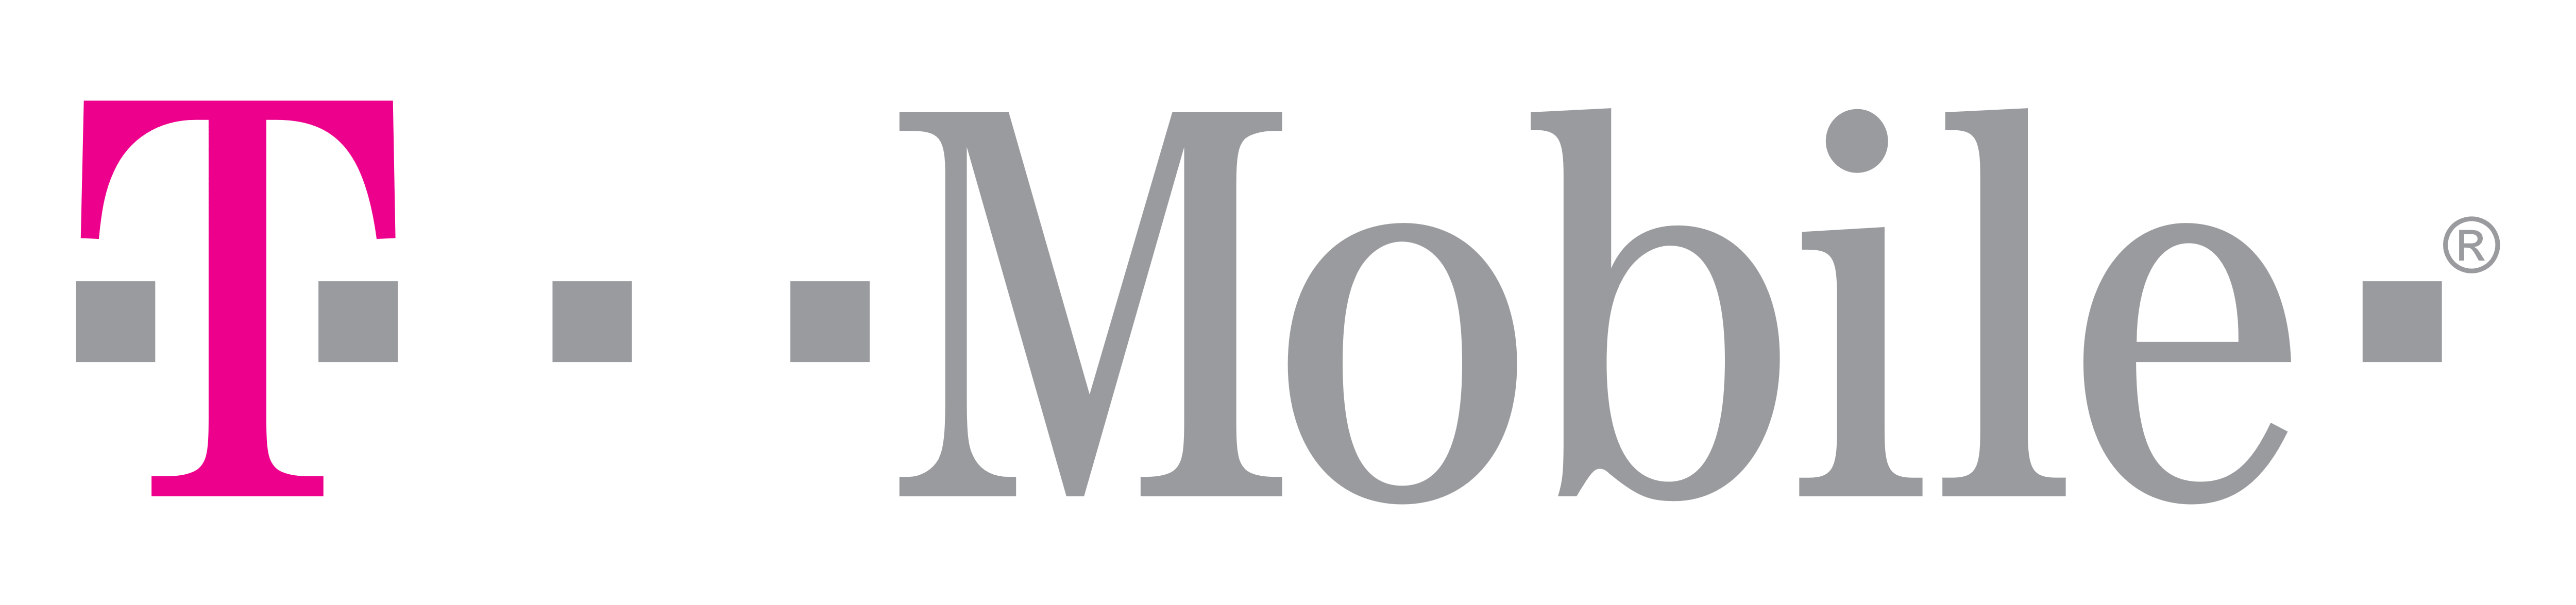 T-Mobile – Logos Download